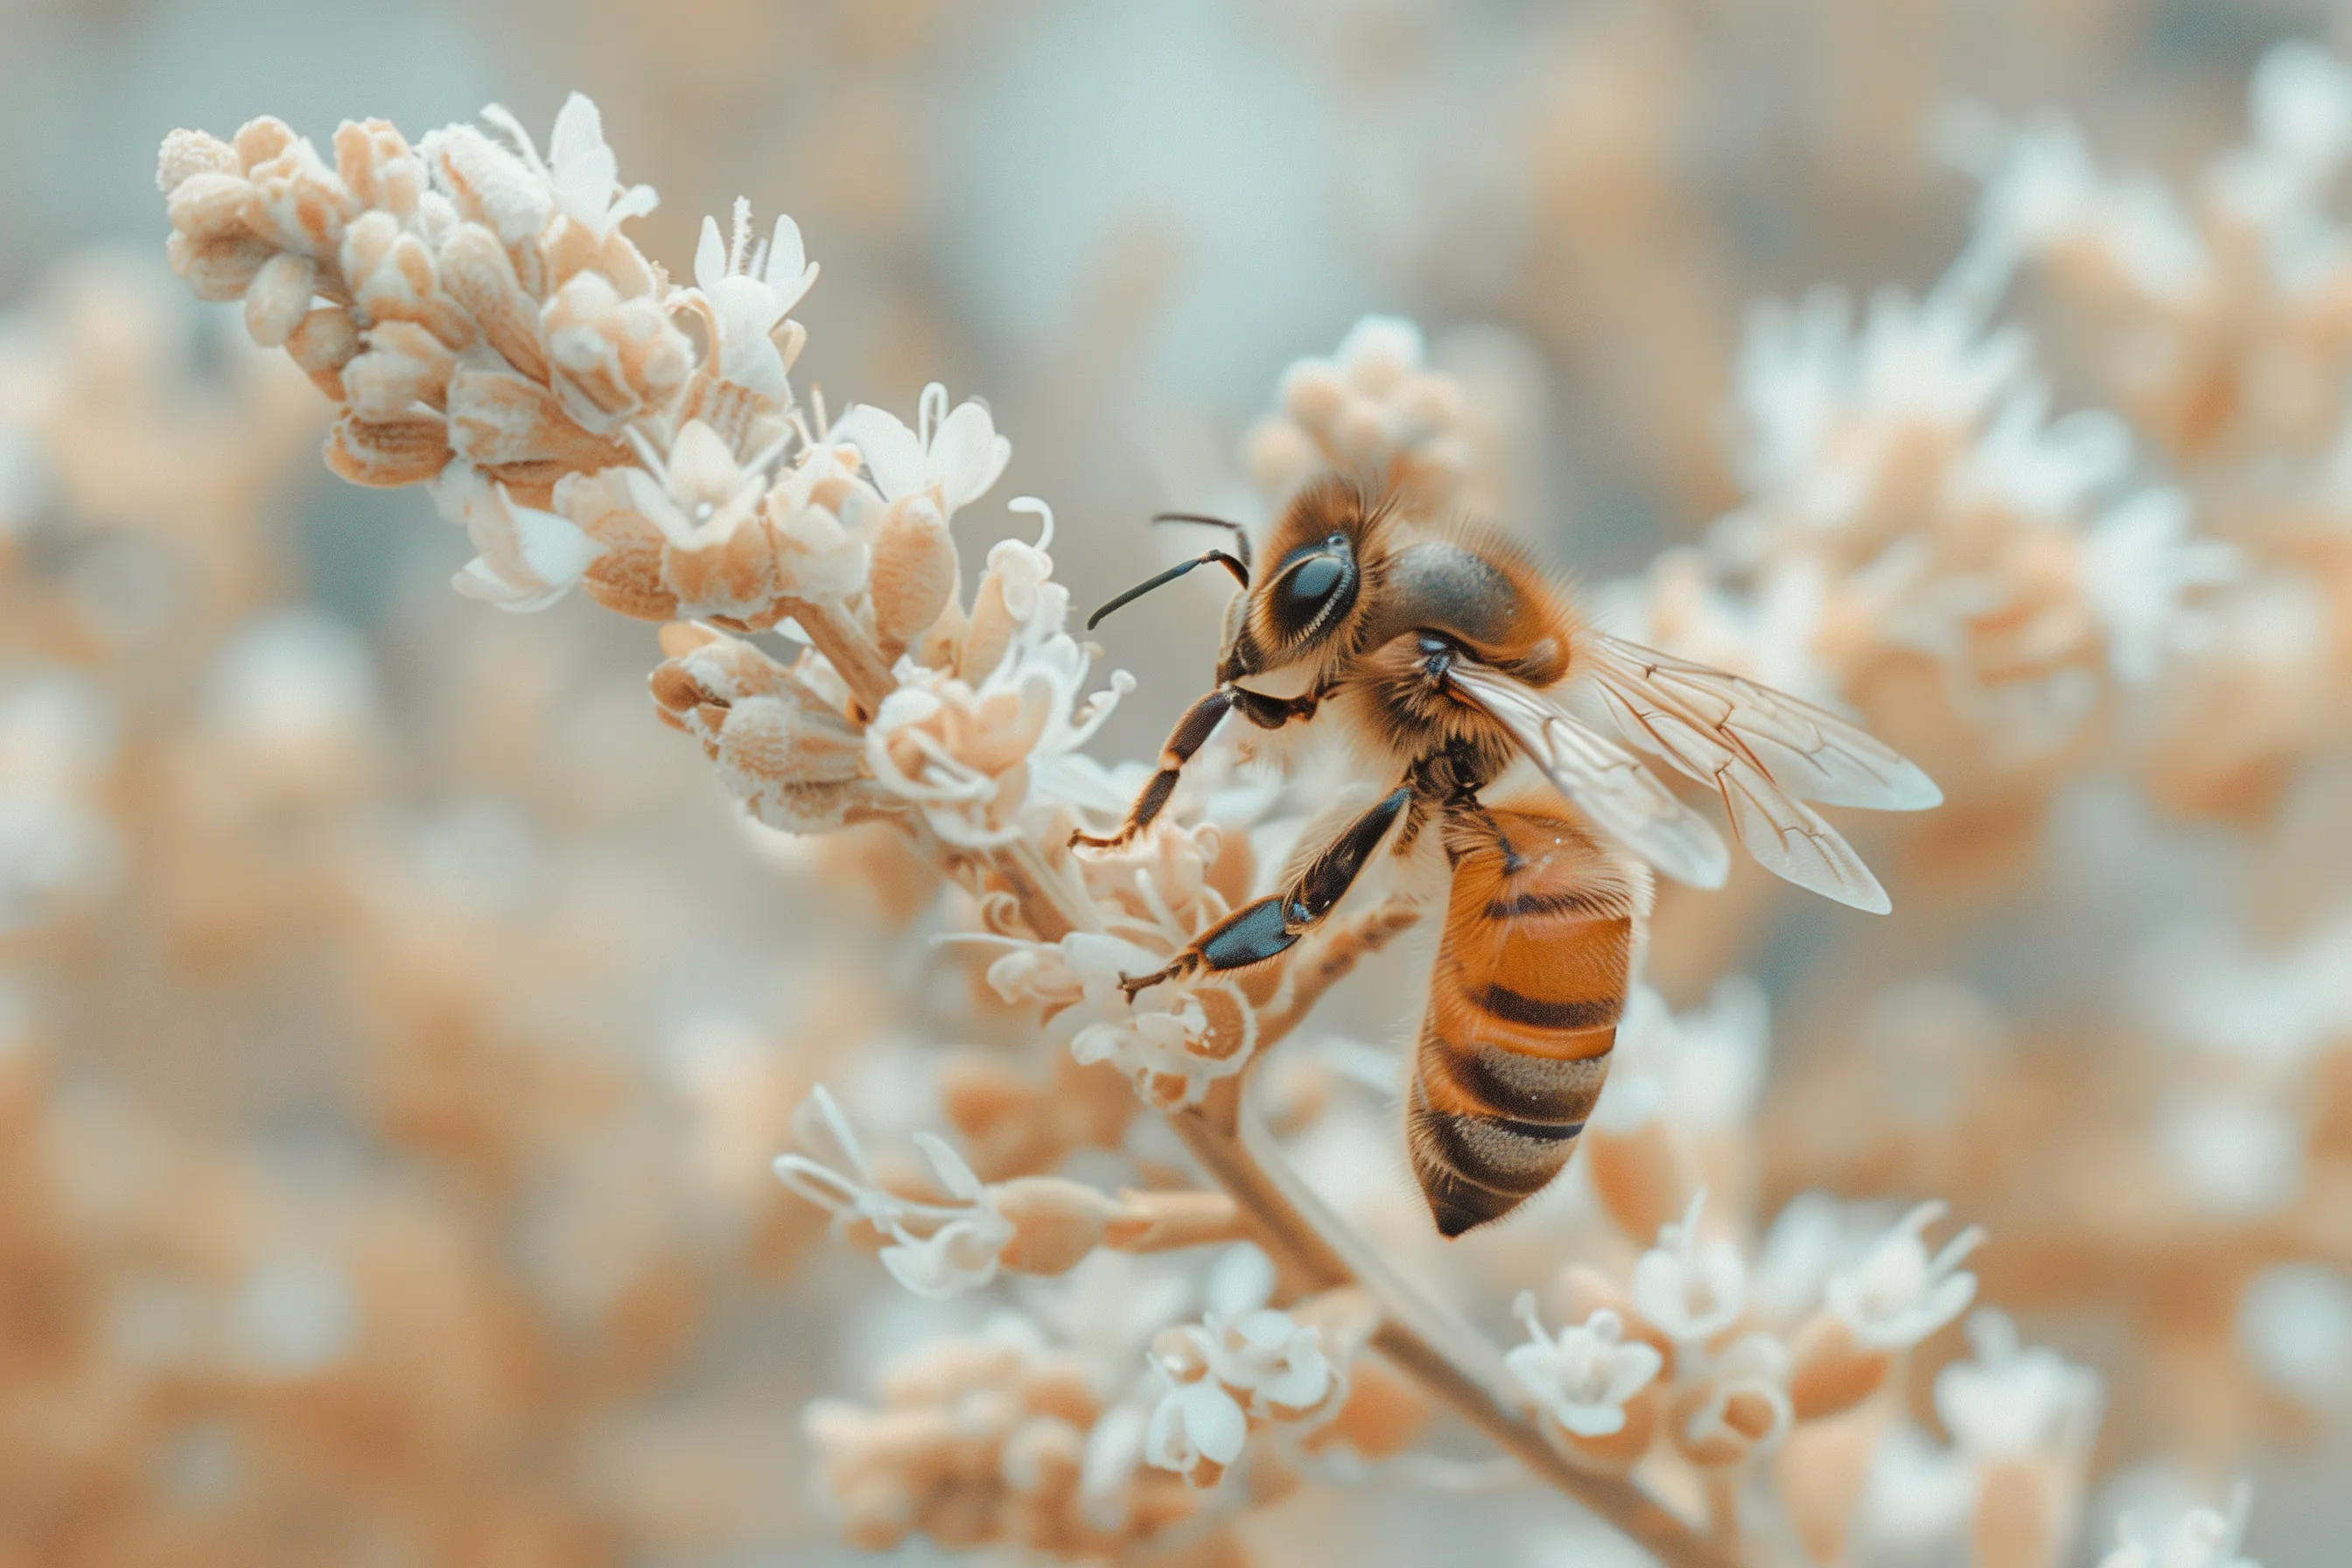 蜜蜂在花上授粉-Topcor 58毫米f/1.4风格prompt模版-Ai提示词